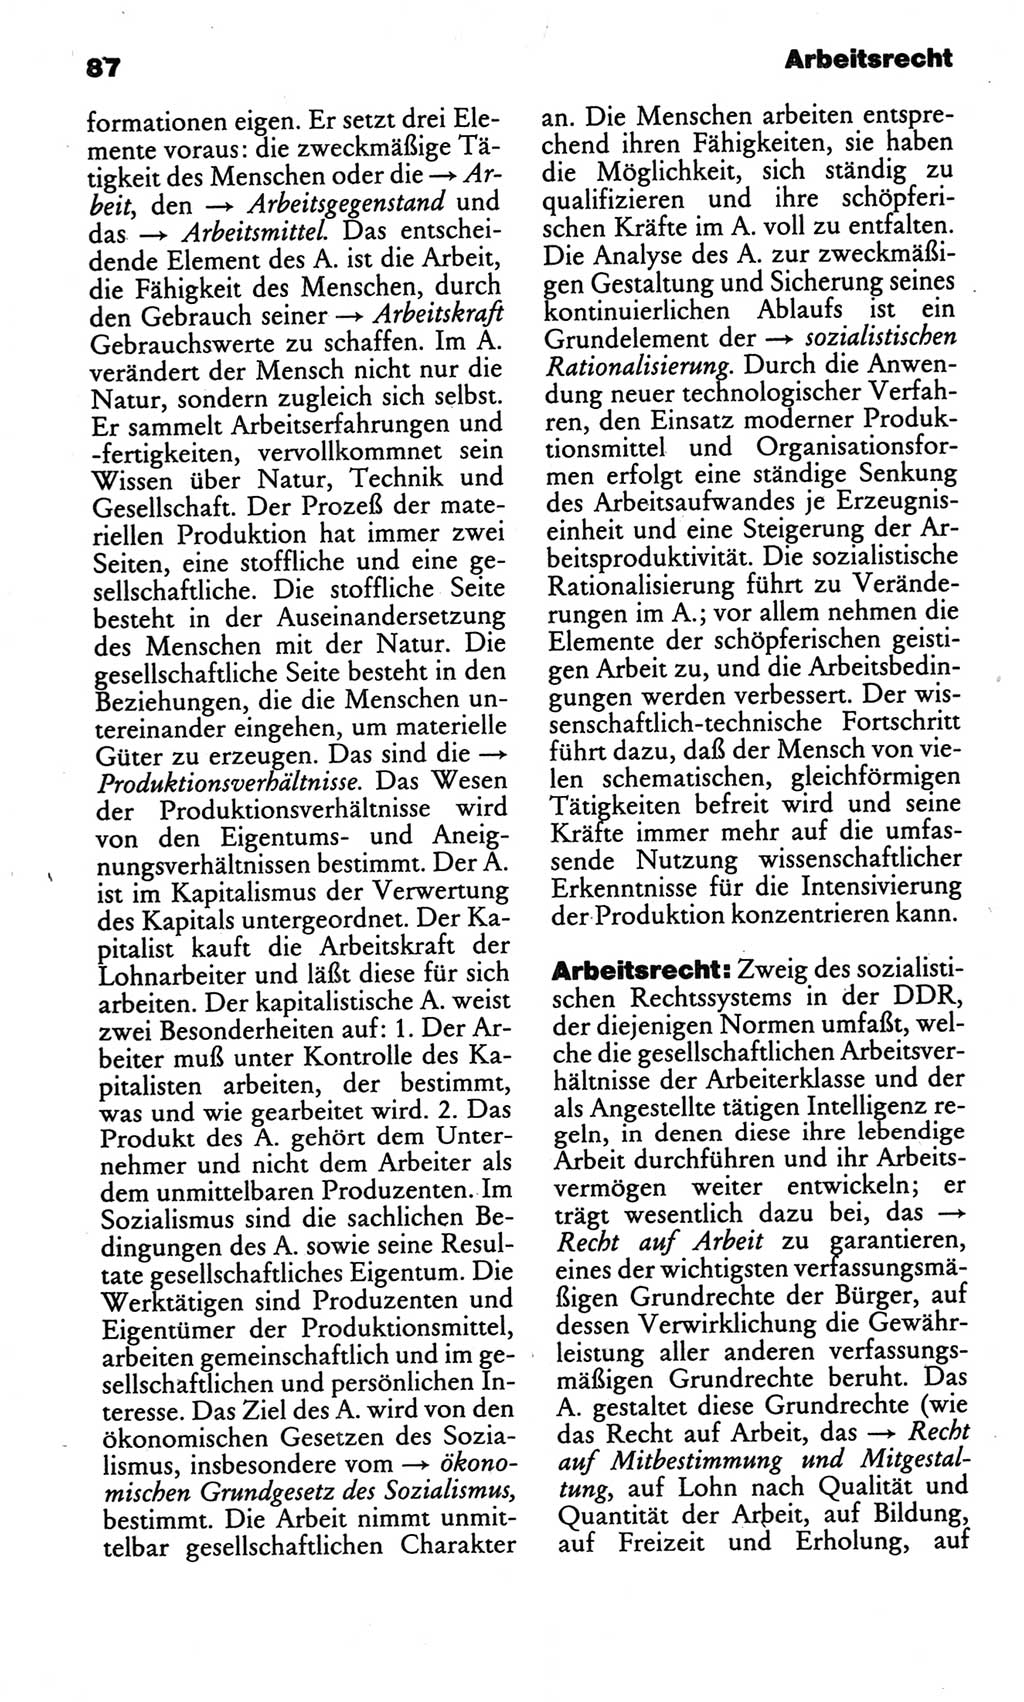 Kleines politisches Wörterbuch [Deutsche Demokratische Republik (DDR)] 1986, Seite 87 (Kl. pol. Wb. DDR 1986, S. 87)